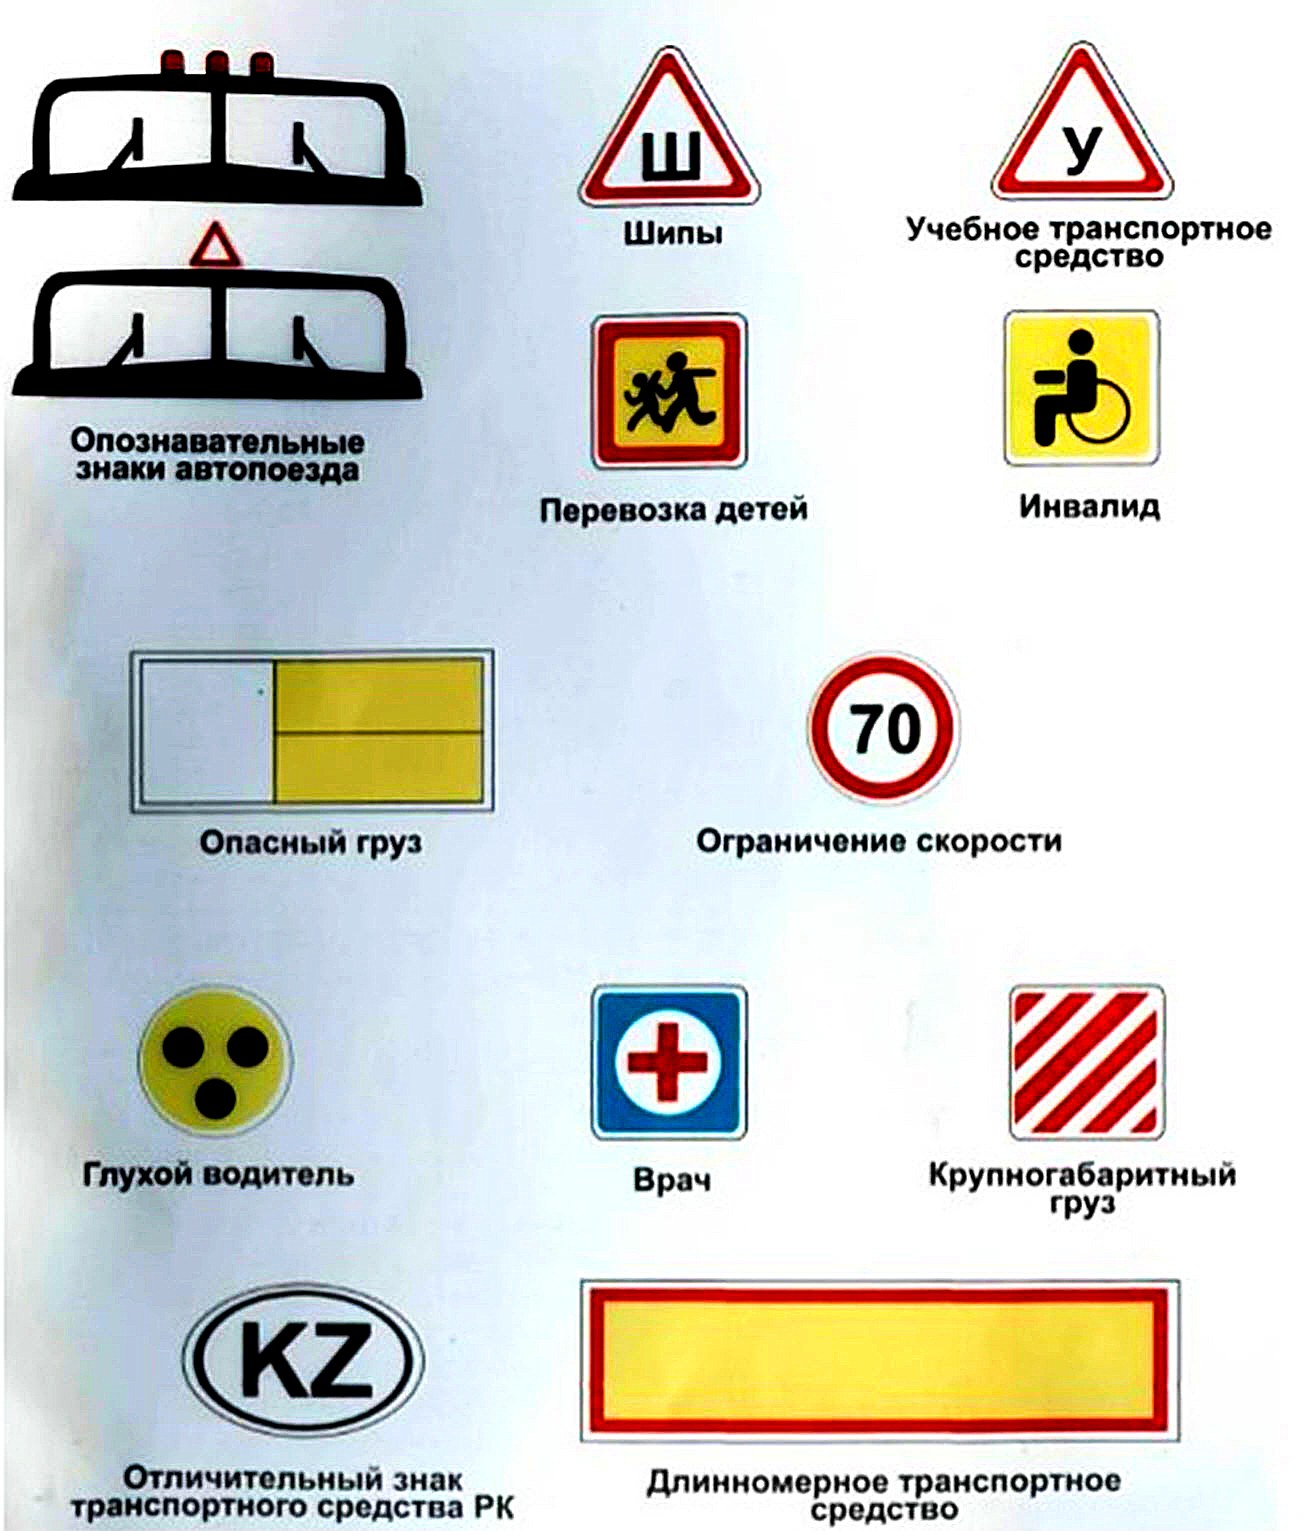 Знак автопоезда должен быть включен. Опознавательные знаки транспортных средств ПДД. Опознавательные знаки ПДД автопоезд. ПДД РБ опознавательные знаки.